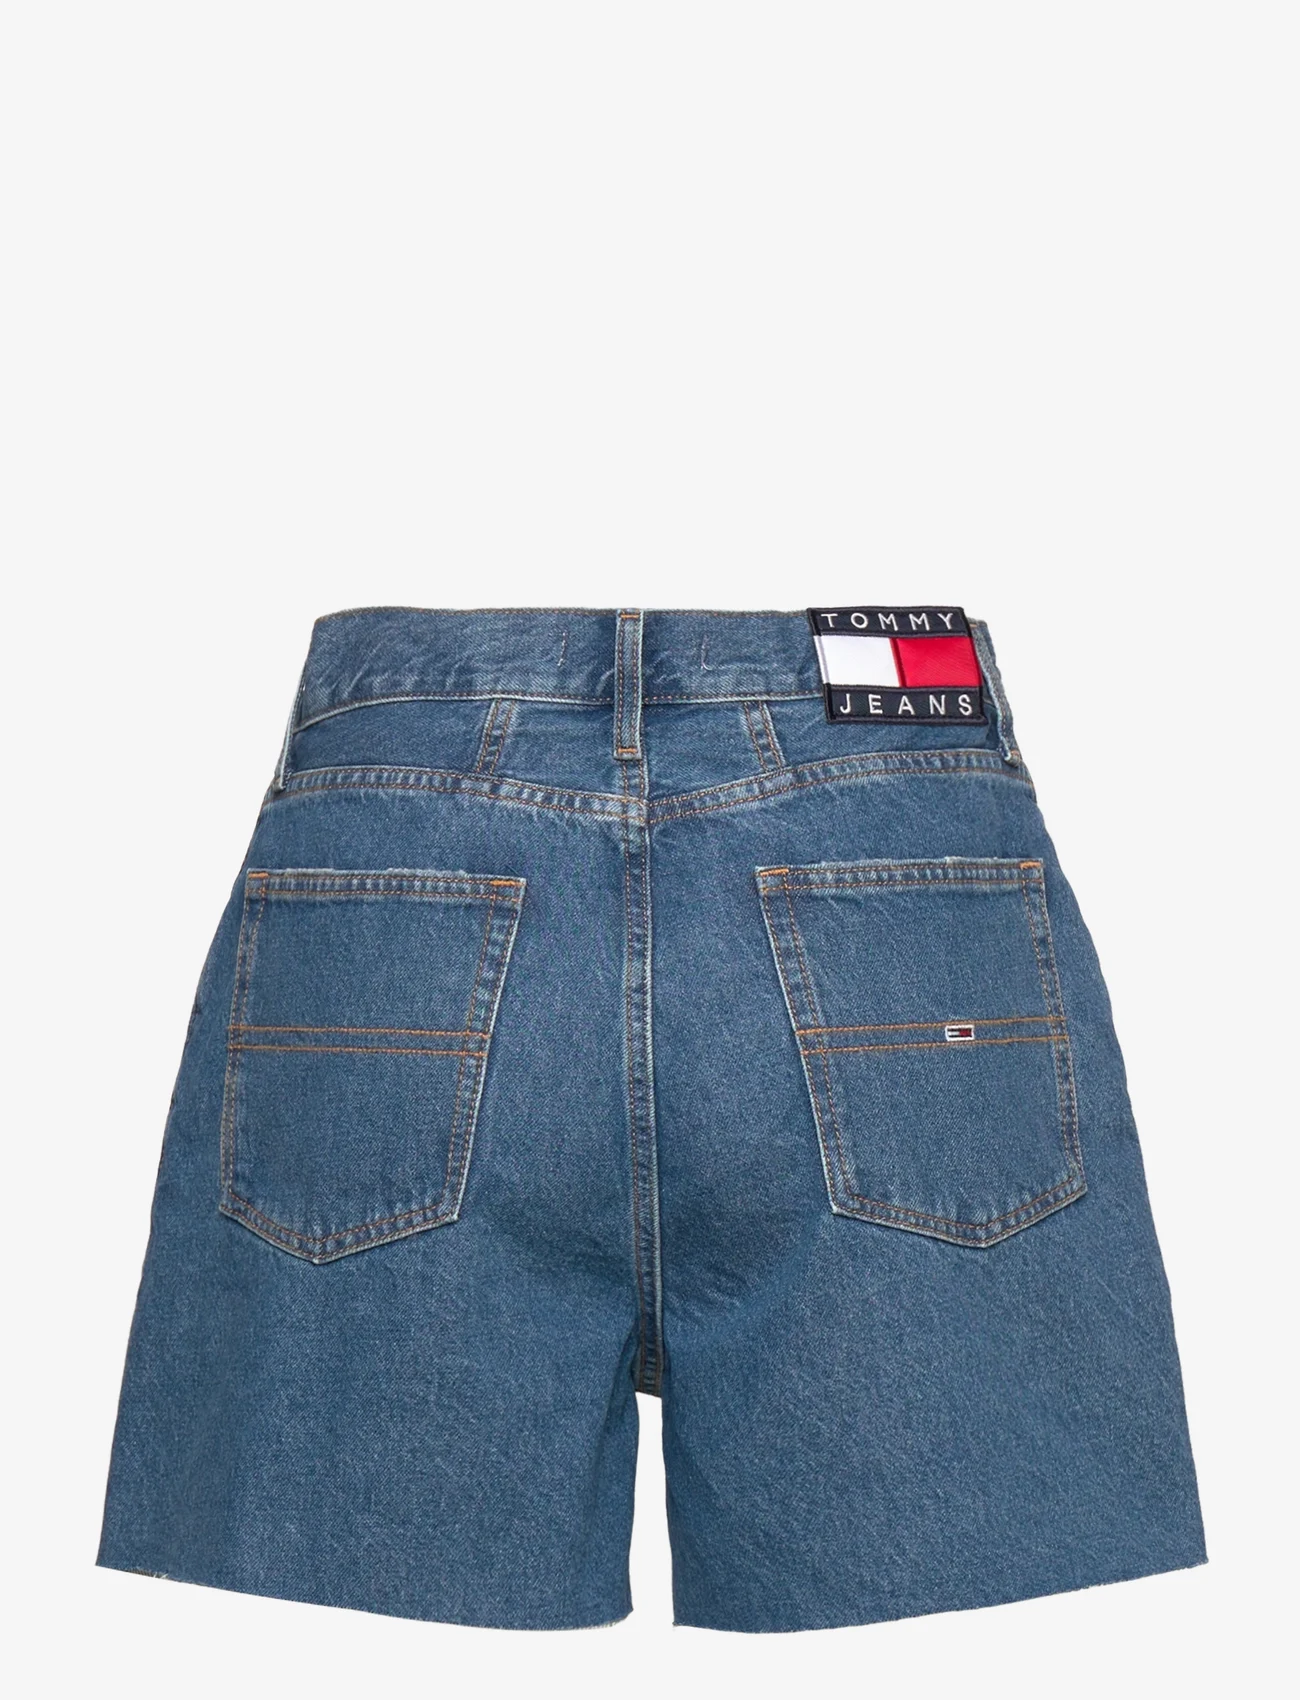 Tommy Jeans - MOM SHORT BG0032 - denim shorts - denim medium - 1